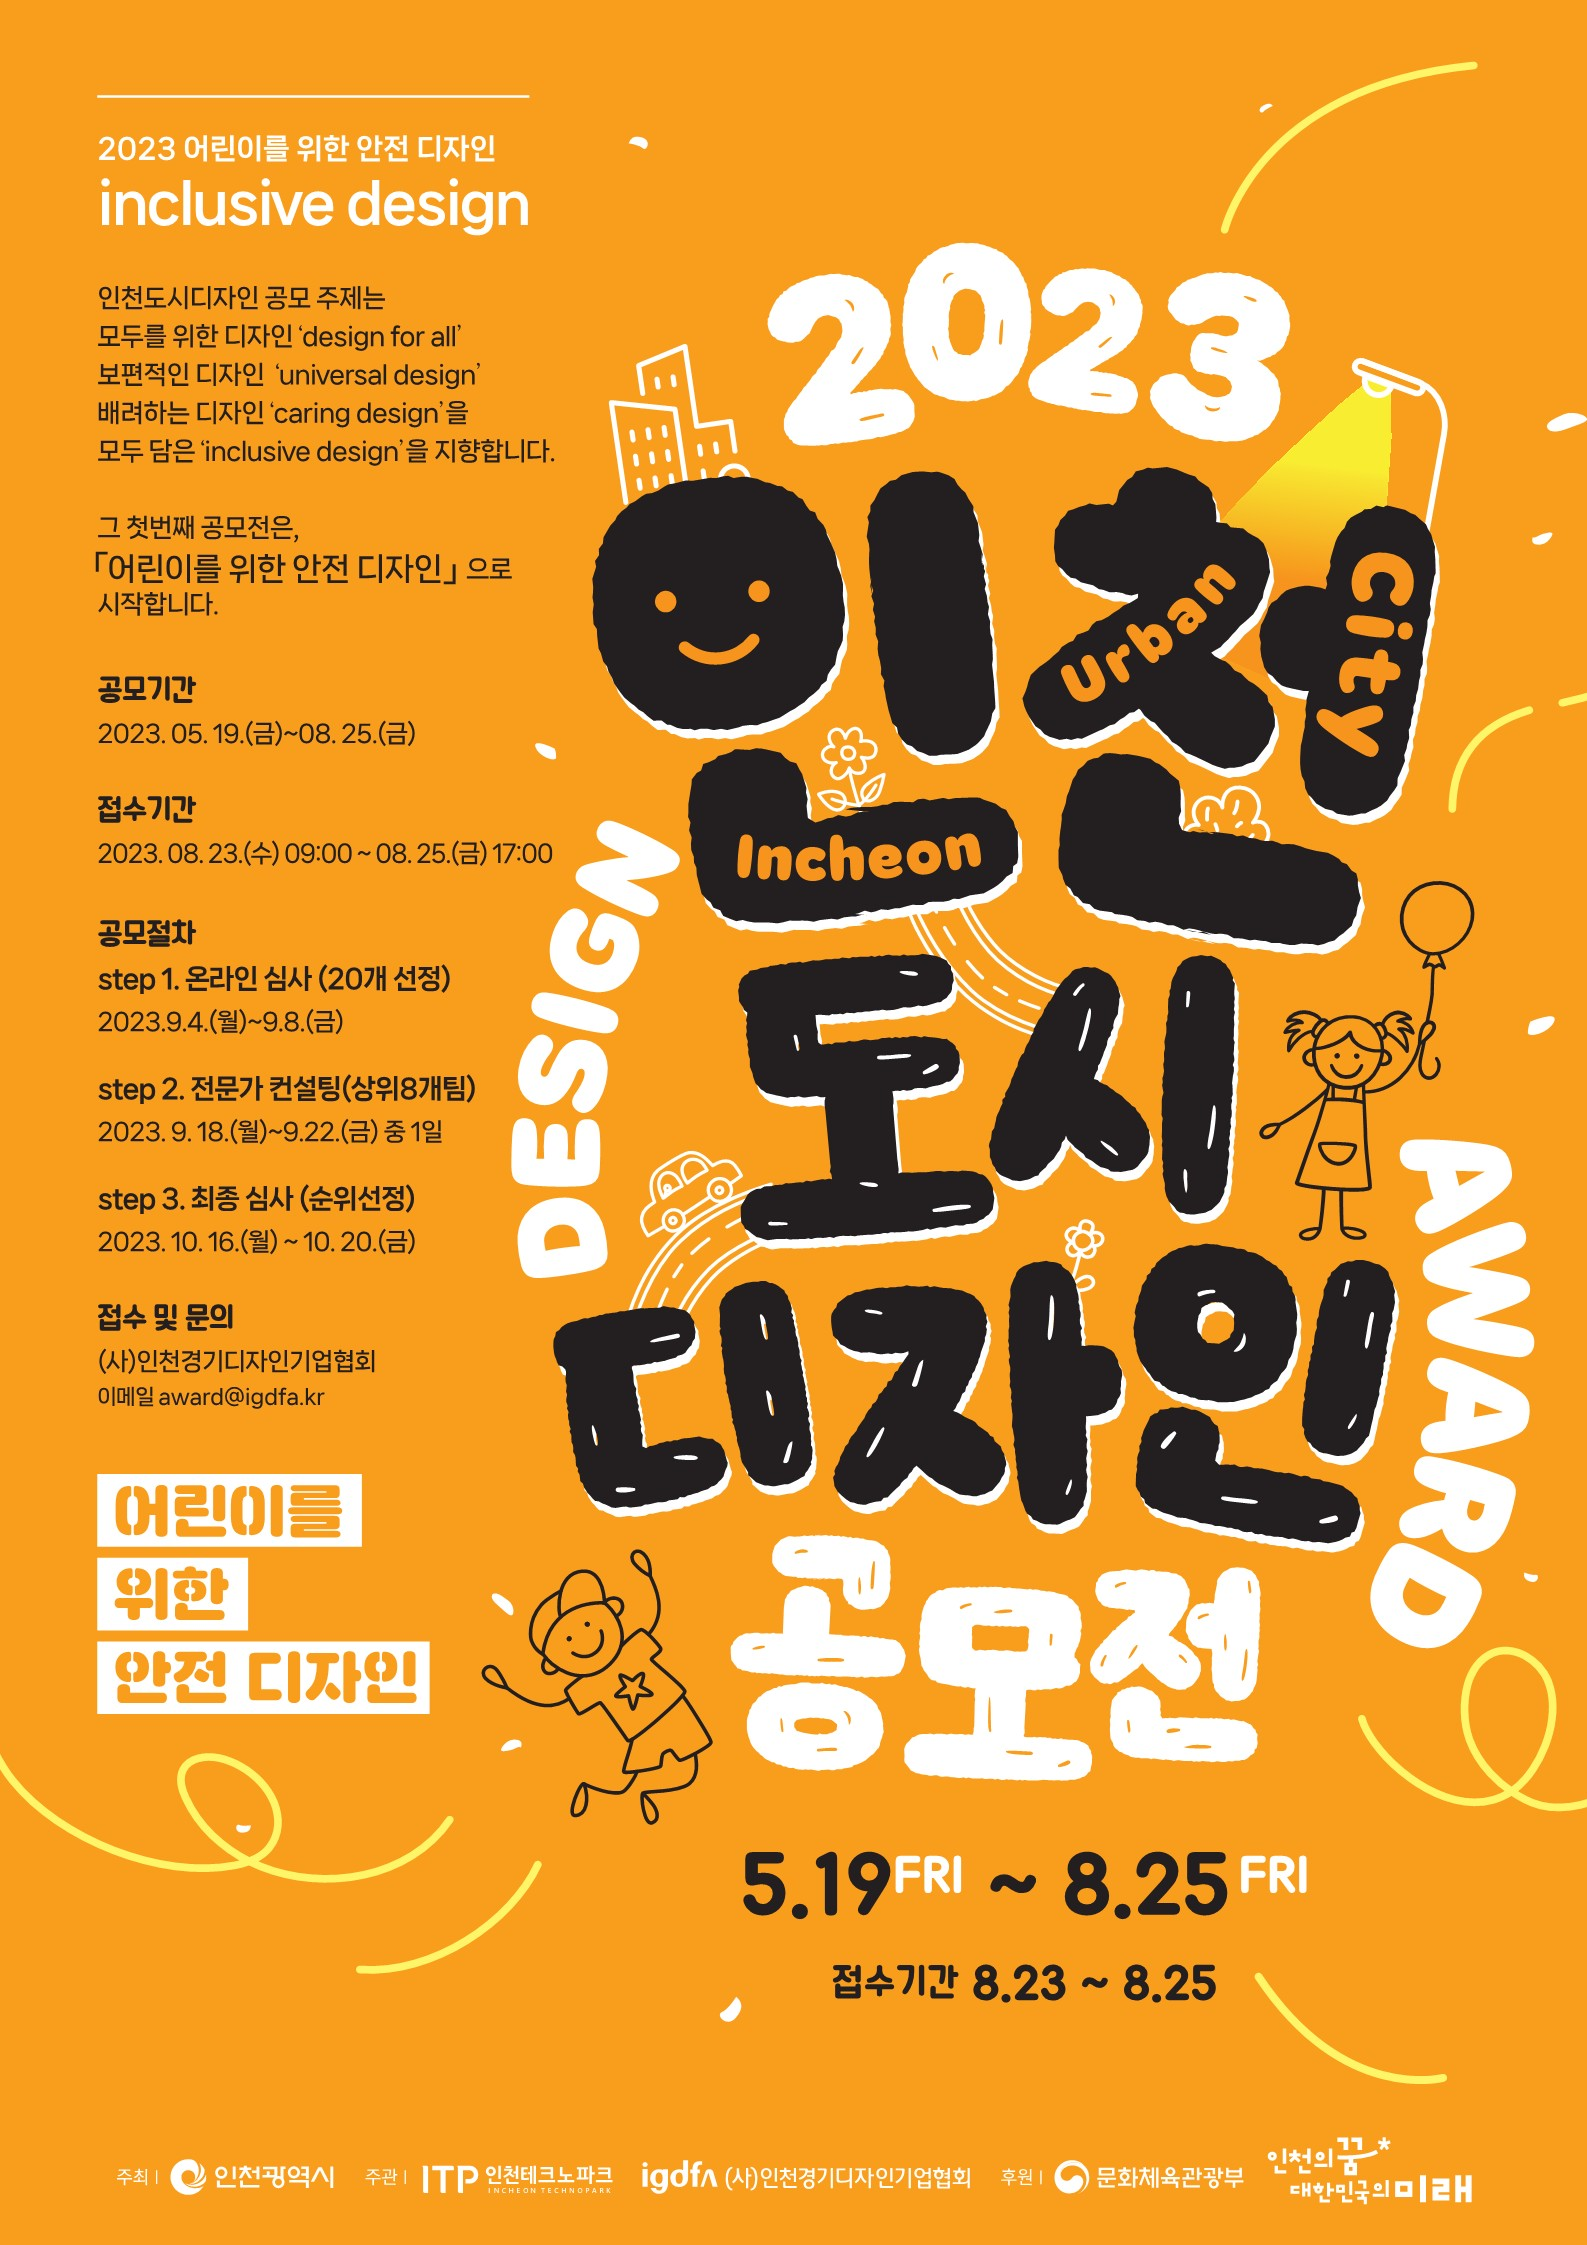 인천시, 도시디자인 공모전 개최 … 어린이 안전 디자인 공모 관련 이미지